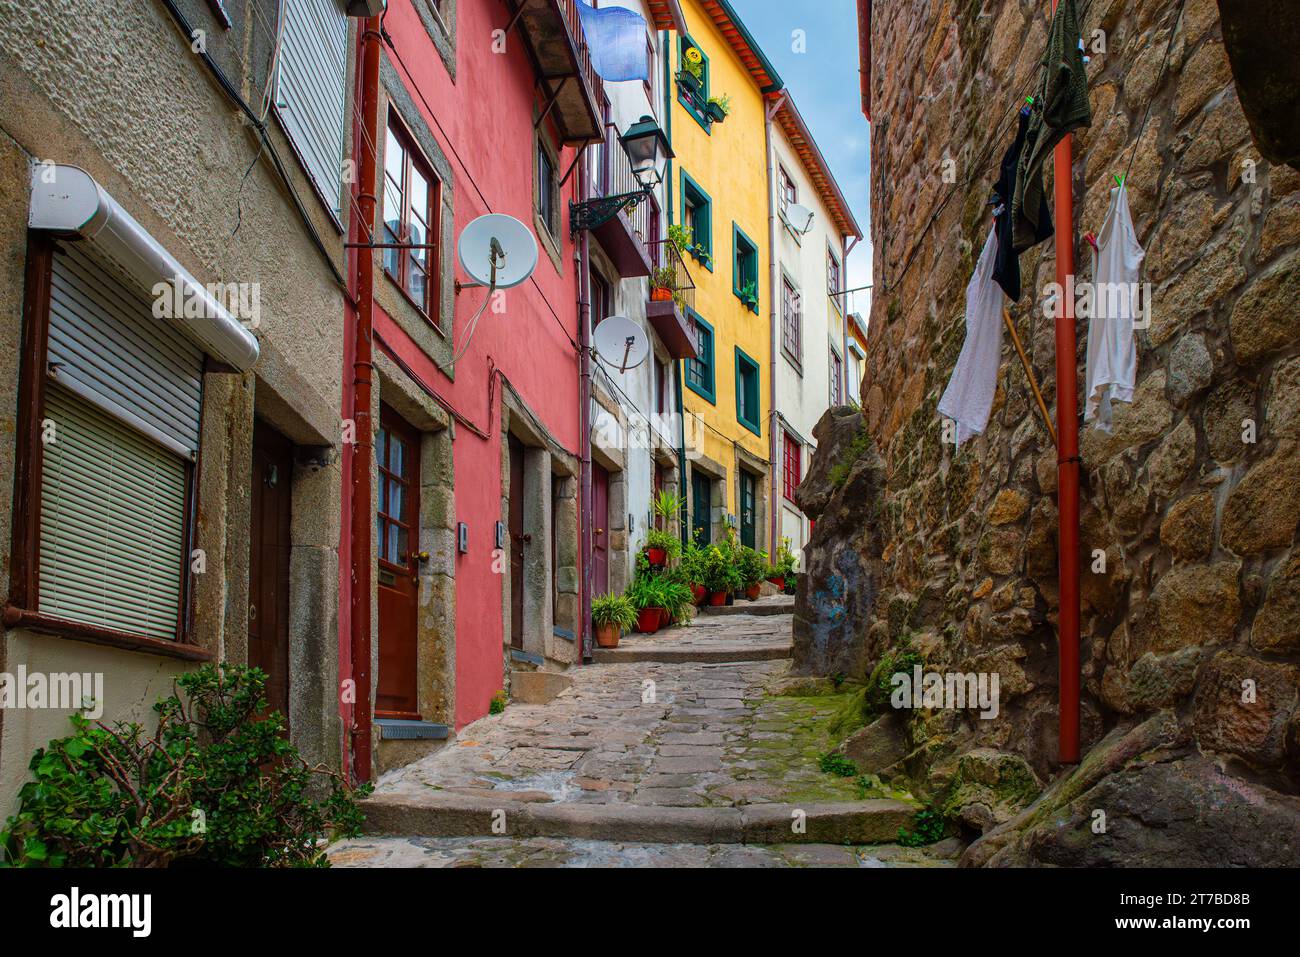 Strada stretta medievale con edifici colorati nella città vecchia di Porto, Portogallo, senza nessuno. Architettura medievale del centro di Oporto. Viaggi Foto Stock